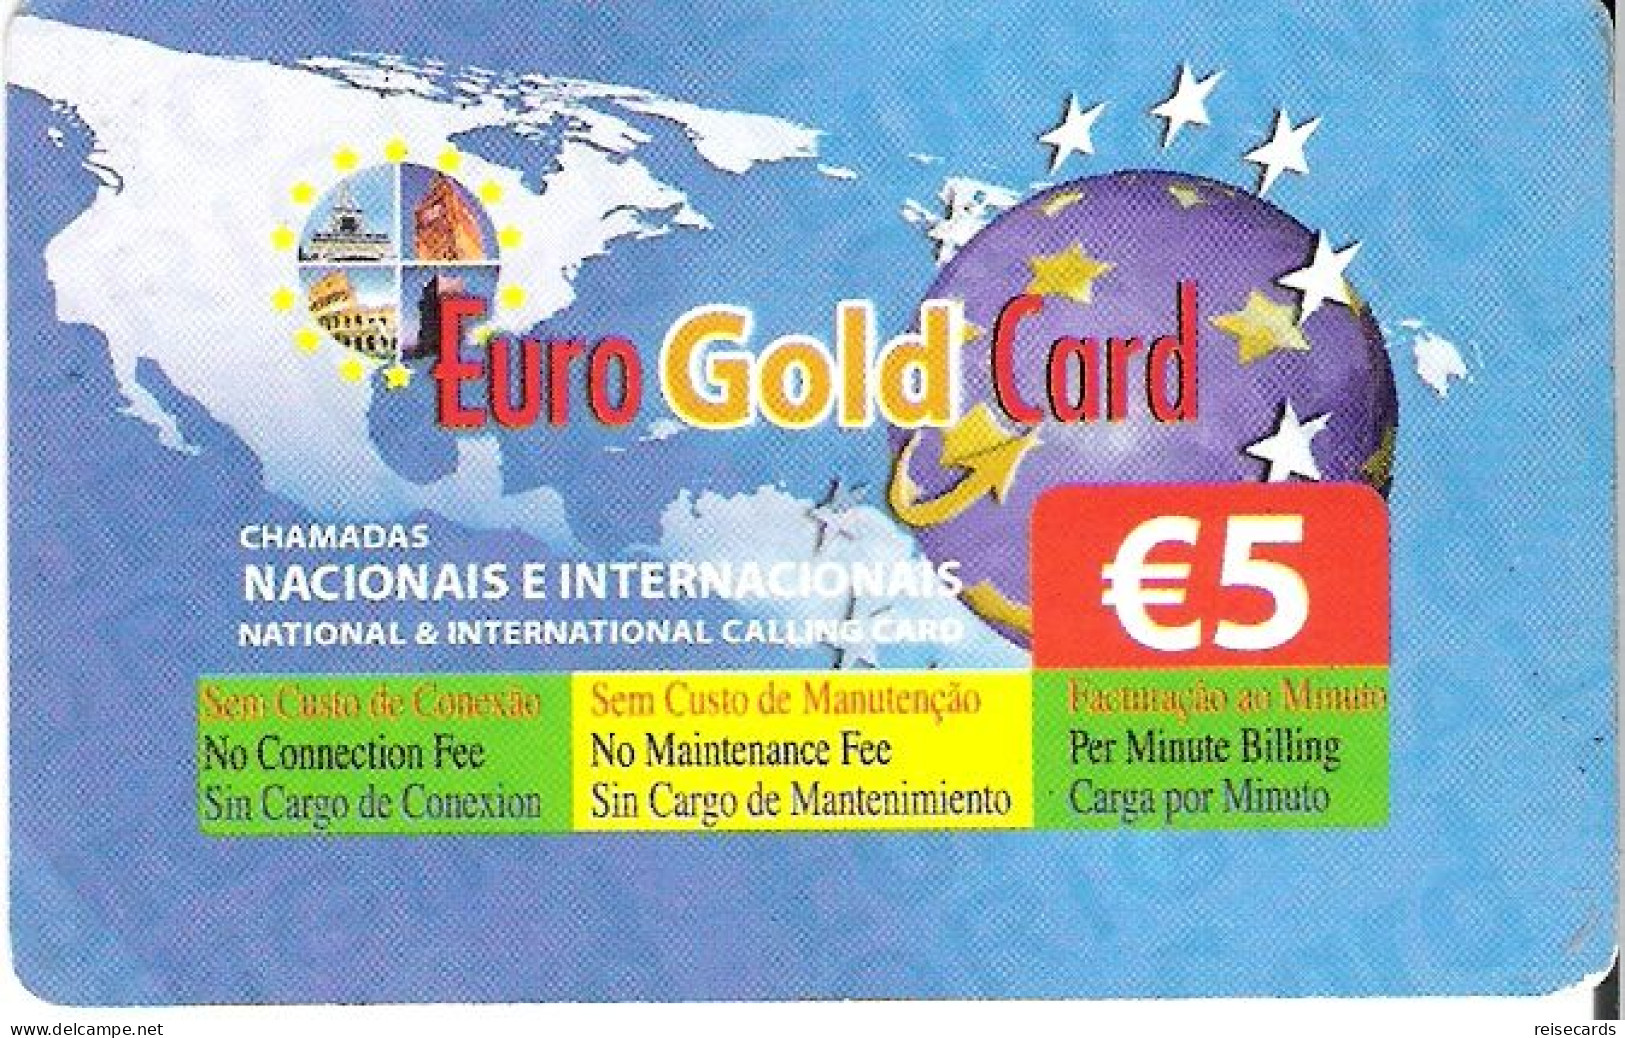 Portugal: Prepaid Novis - Euro Gold Card - Polen